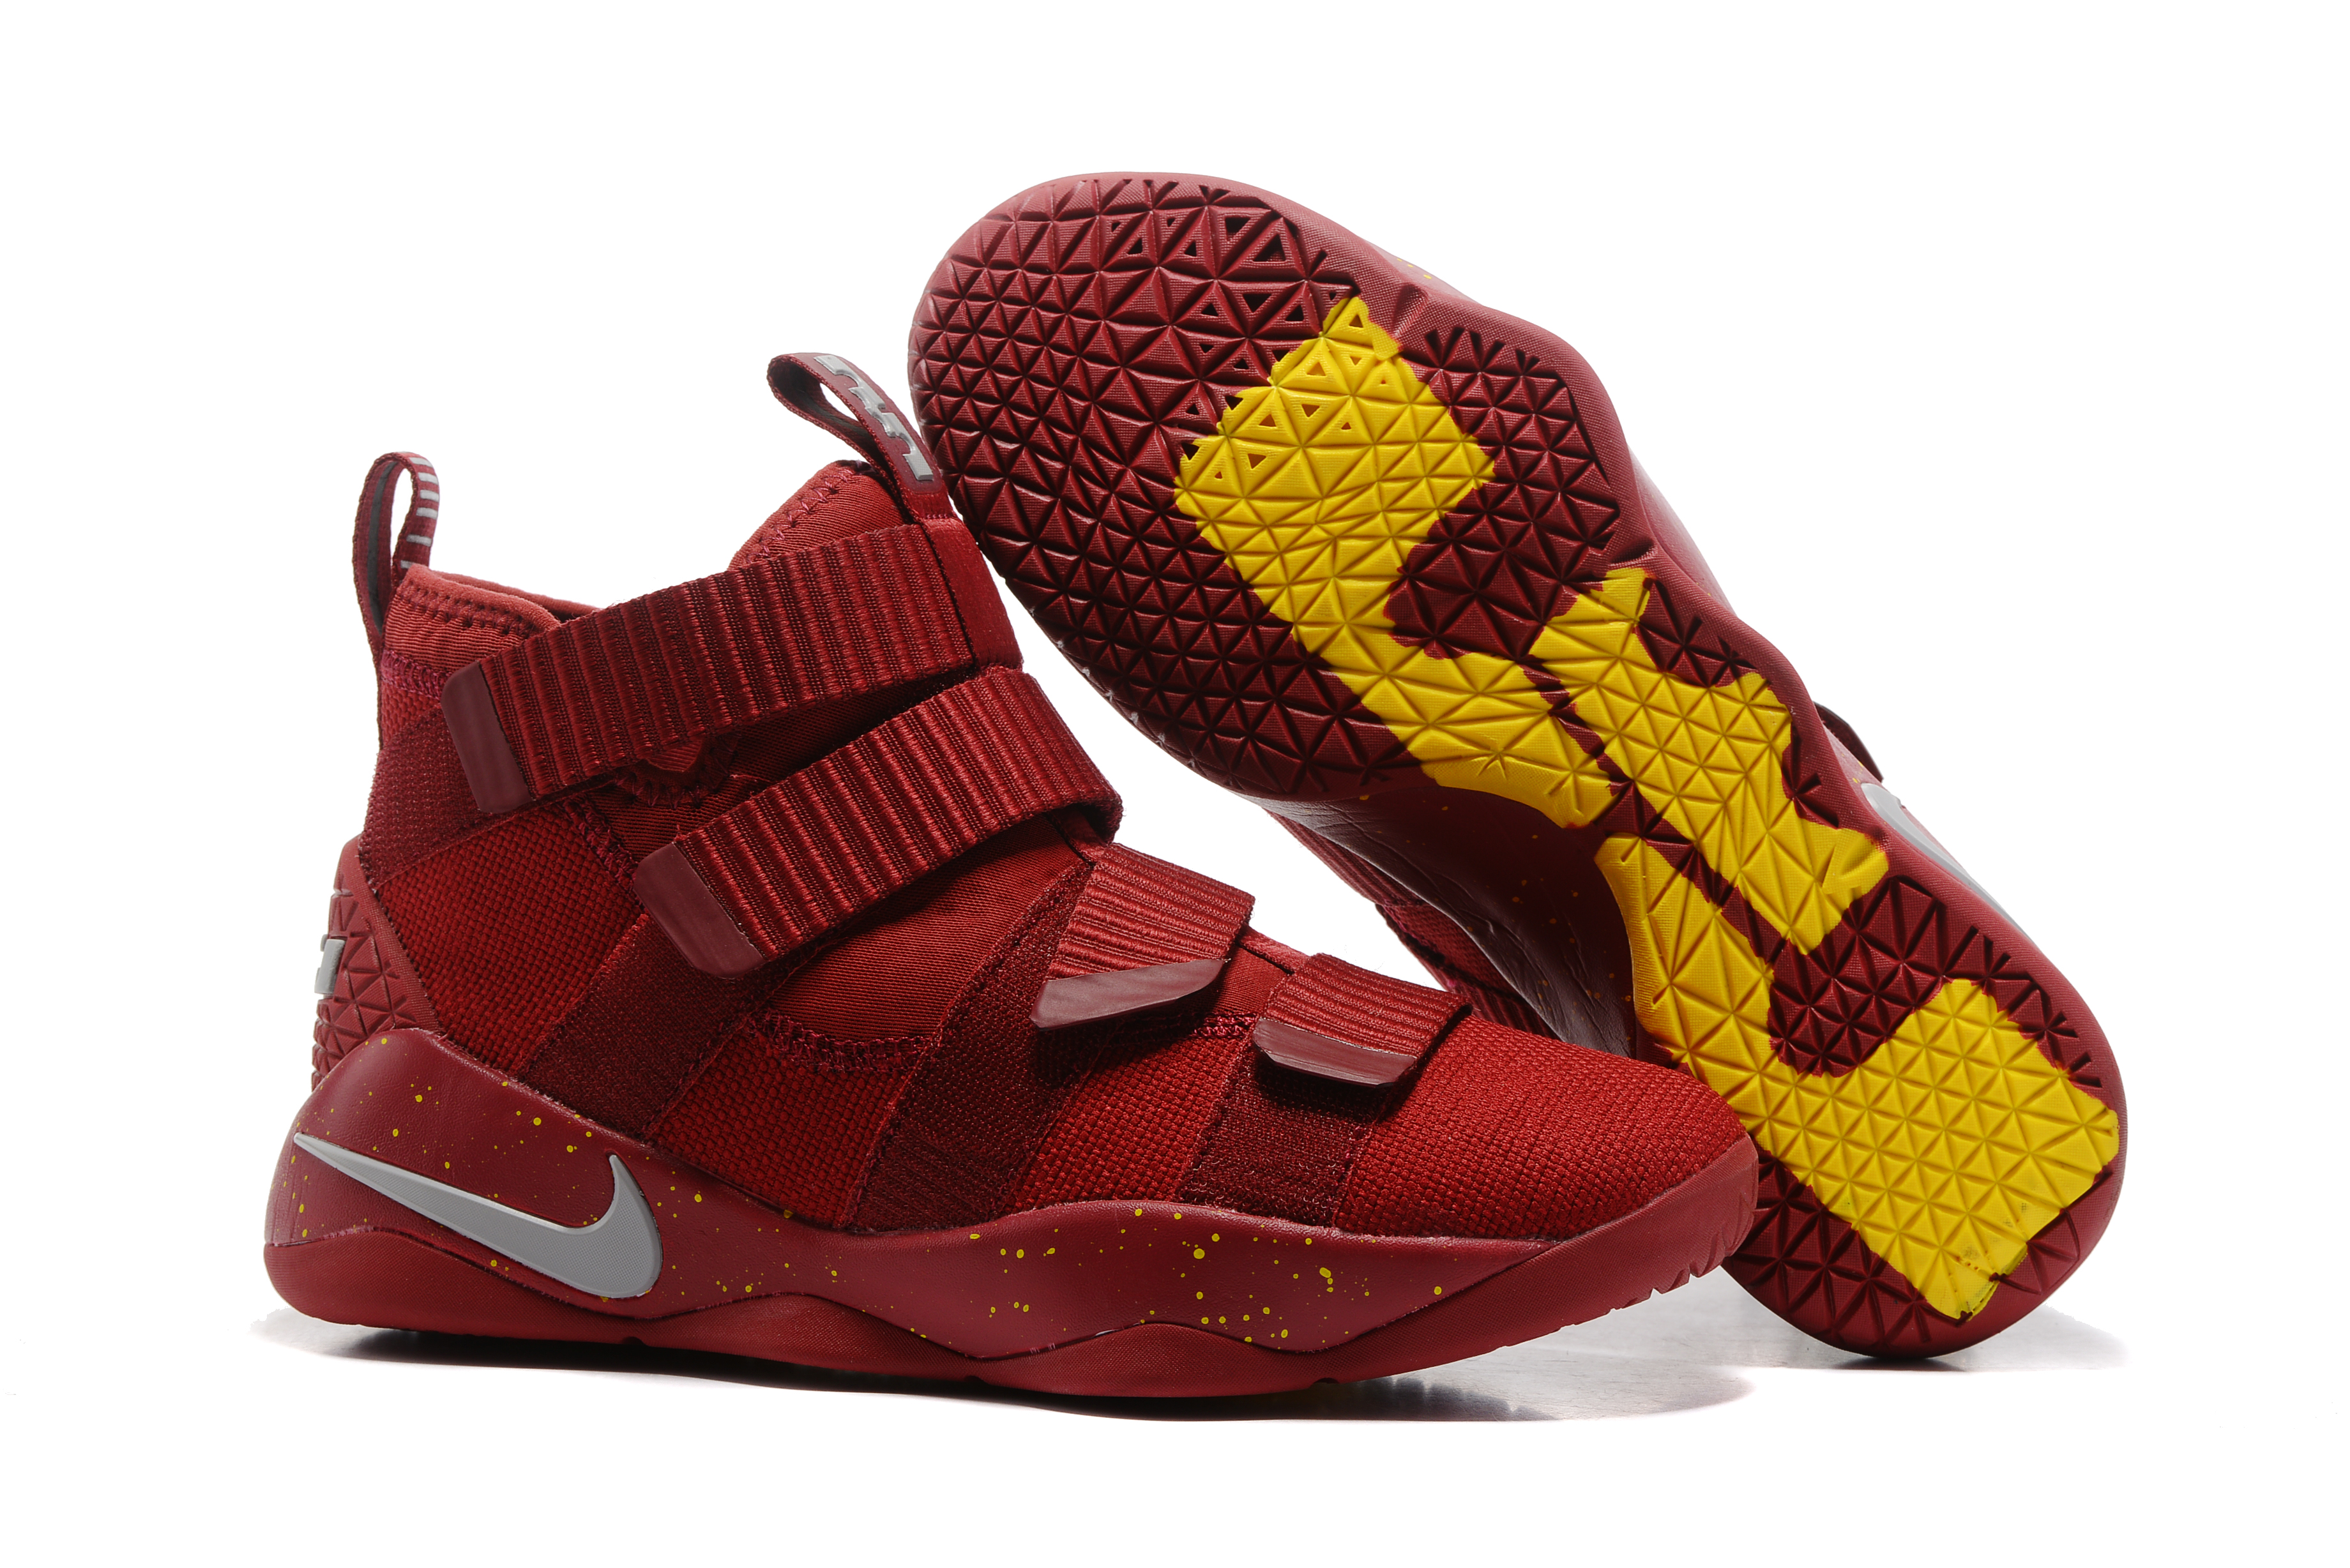 Nike Lebron Solider 11 CAVS Basktabll Shoes